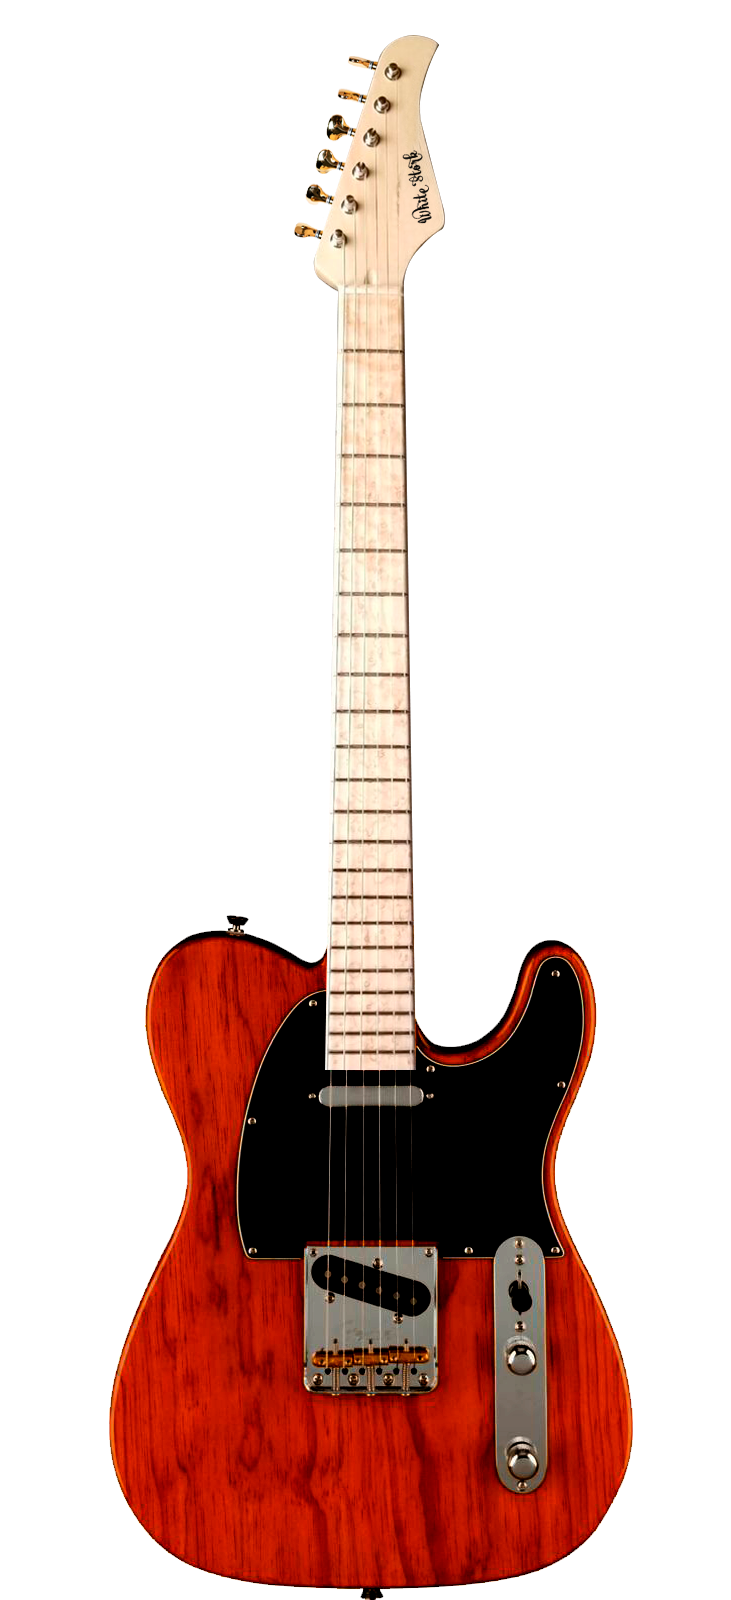 Custom Made Telecaster Style Guitar Built to your Specs | WhiteStork –  WhiteStork Guitars